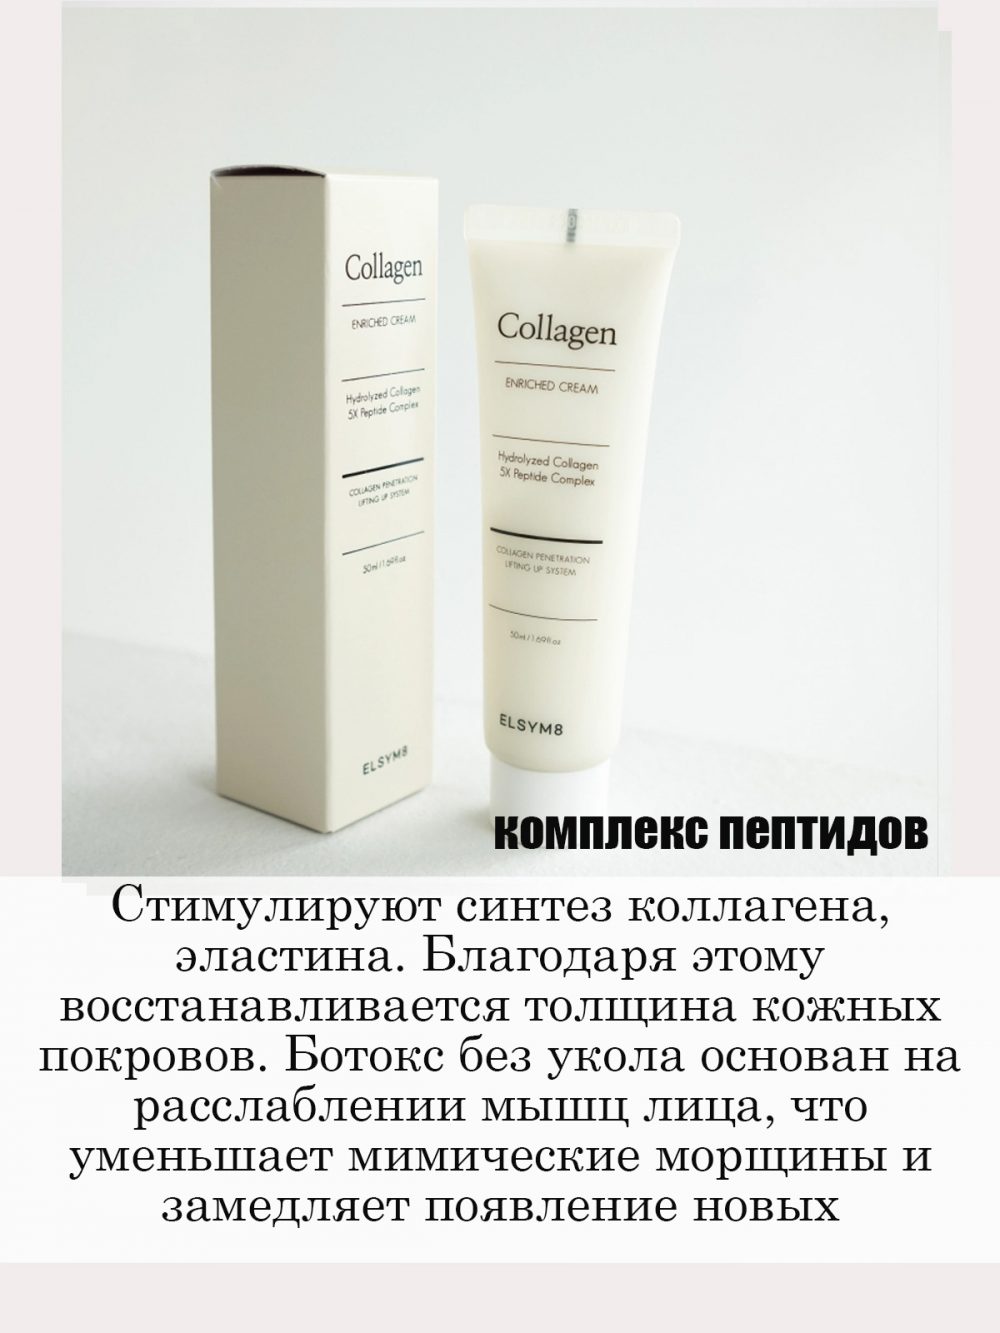 Восстанавливающий лифтинг-крем ELSYM8 Collagen + Enriched cream (50 ml)